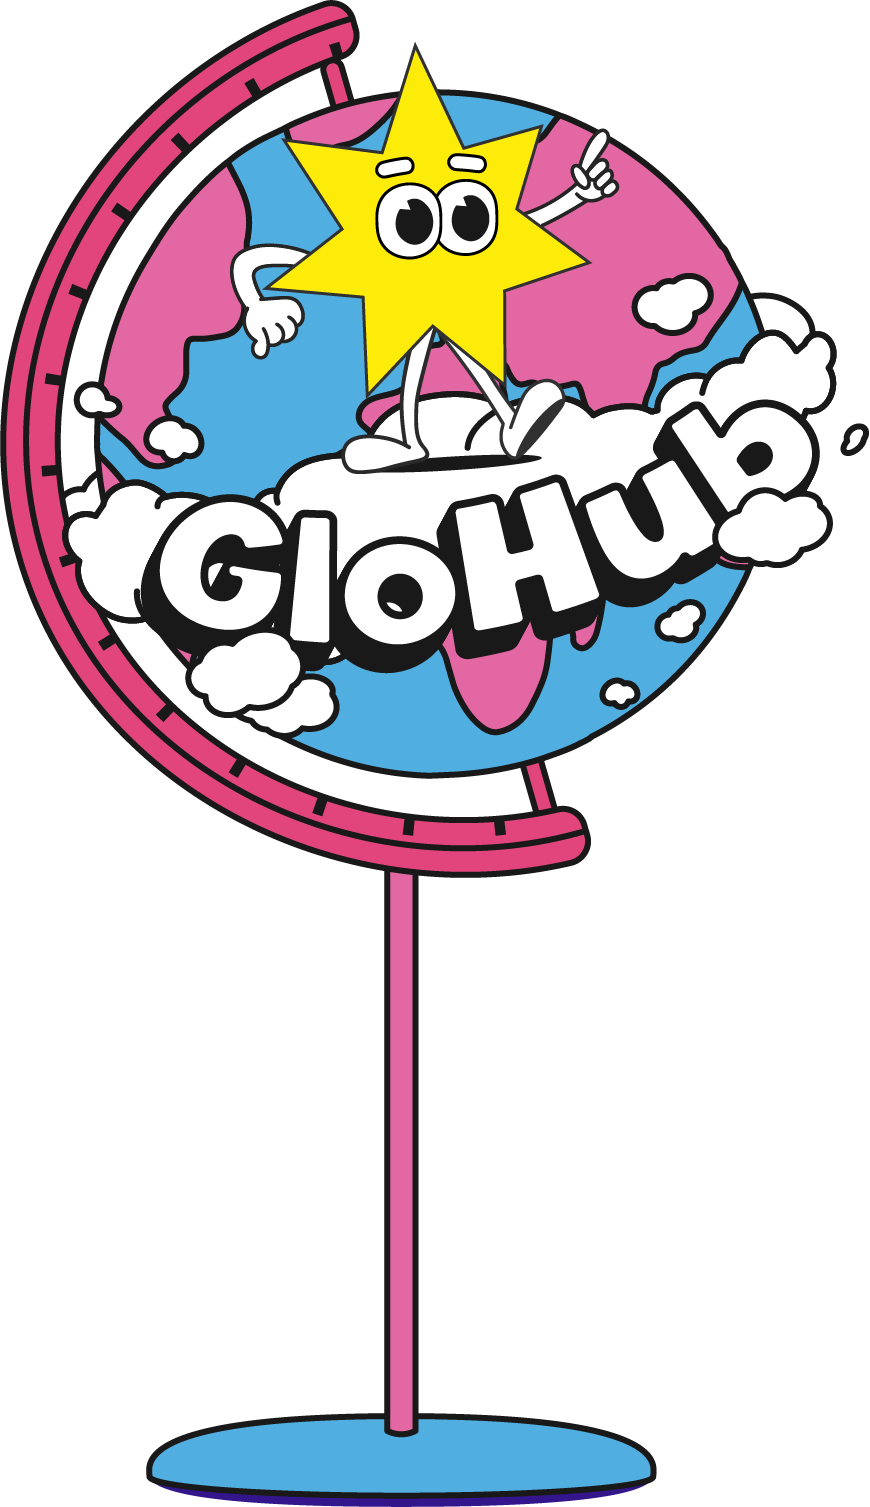 GloHub